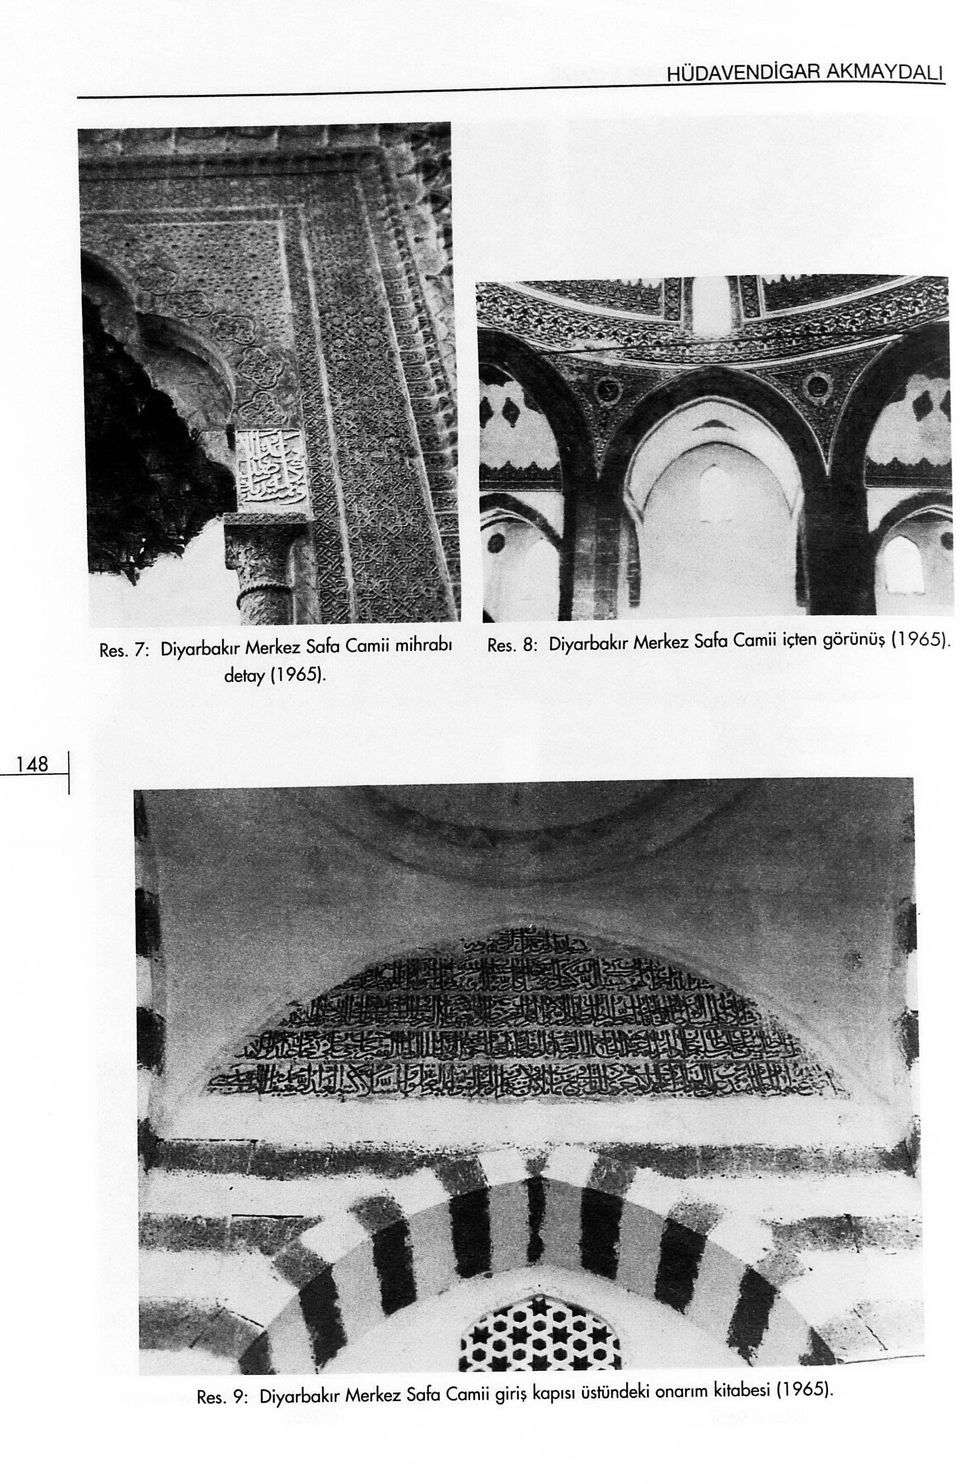 8: Diyarbakır Merkez Safa Camii içten görünüş (1965).